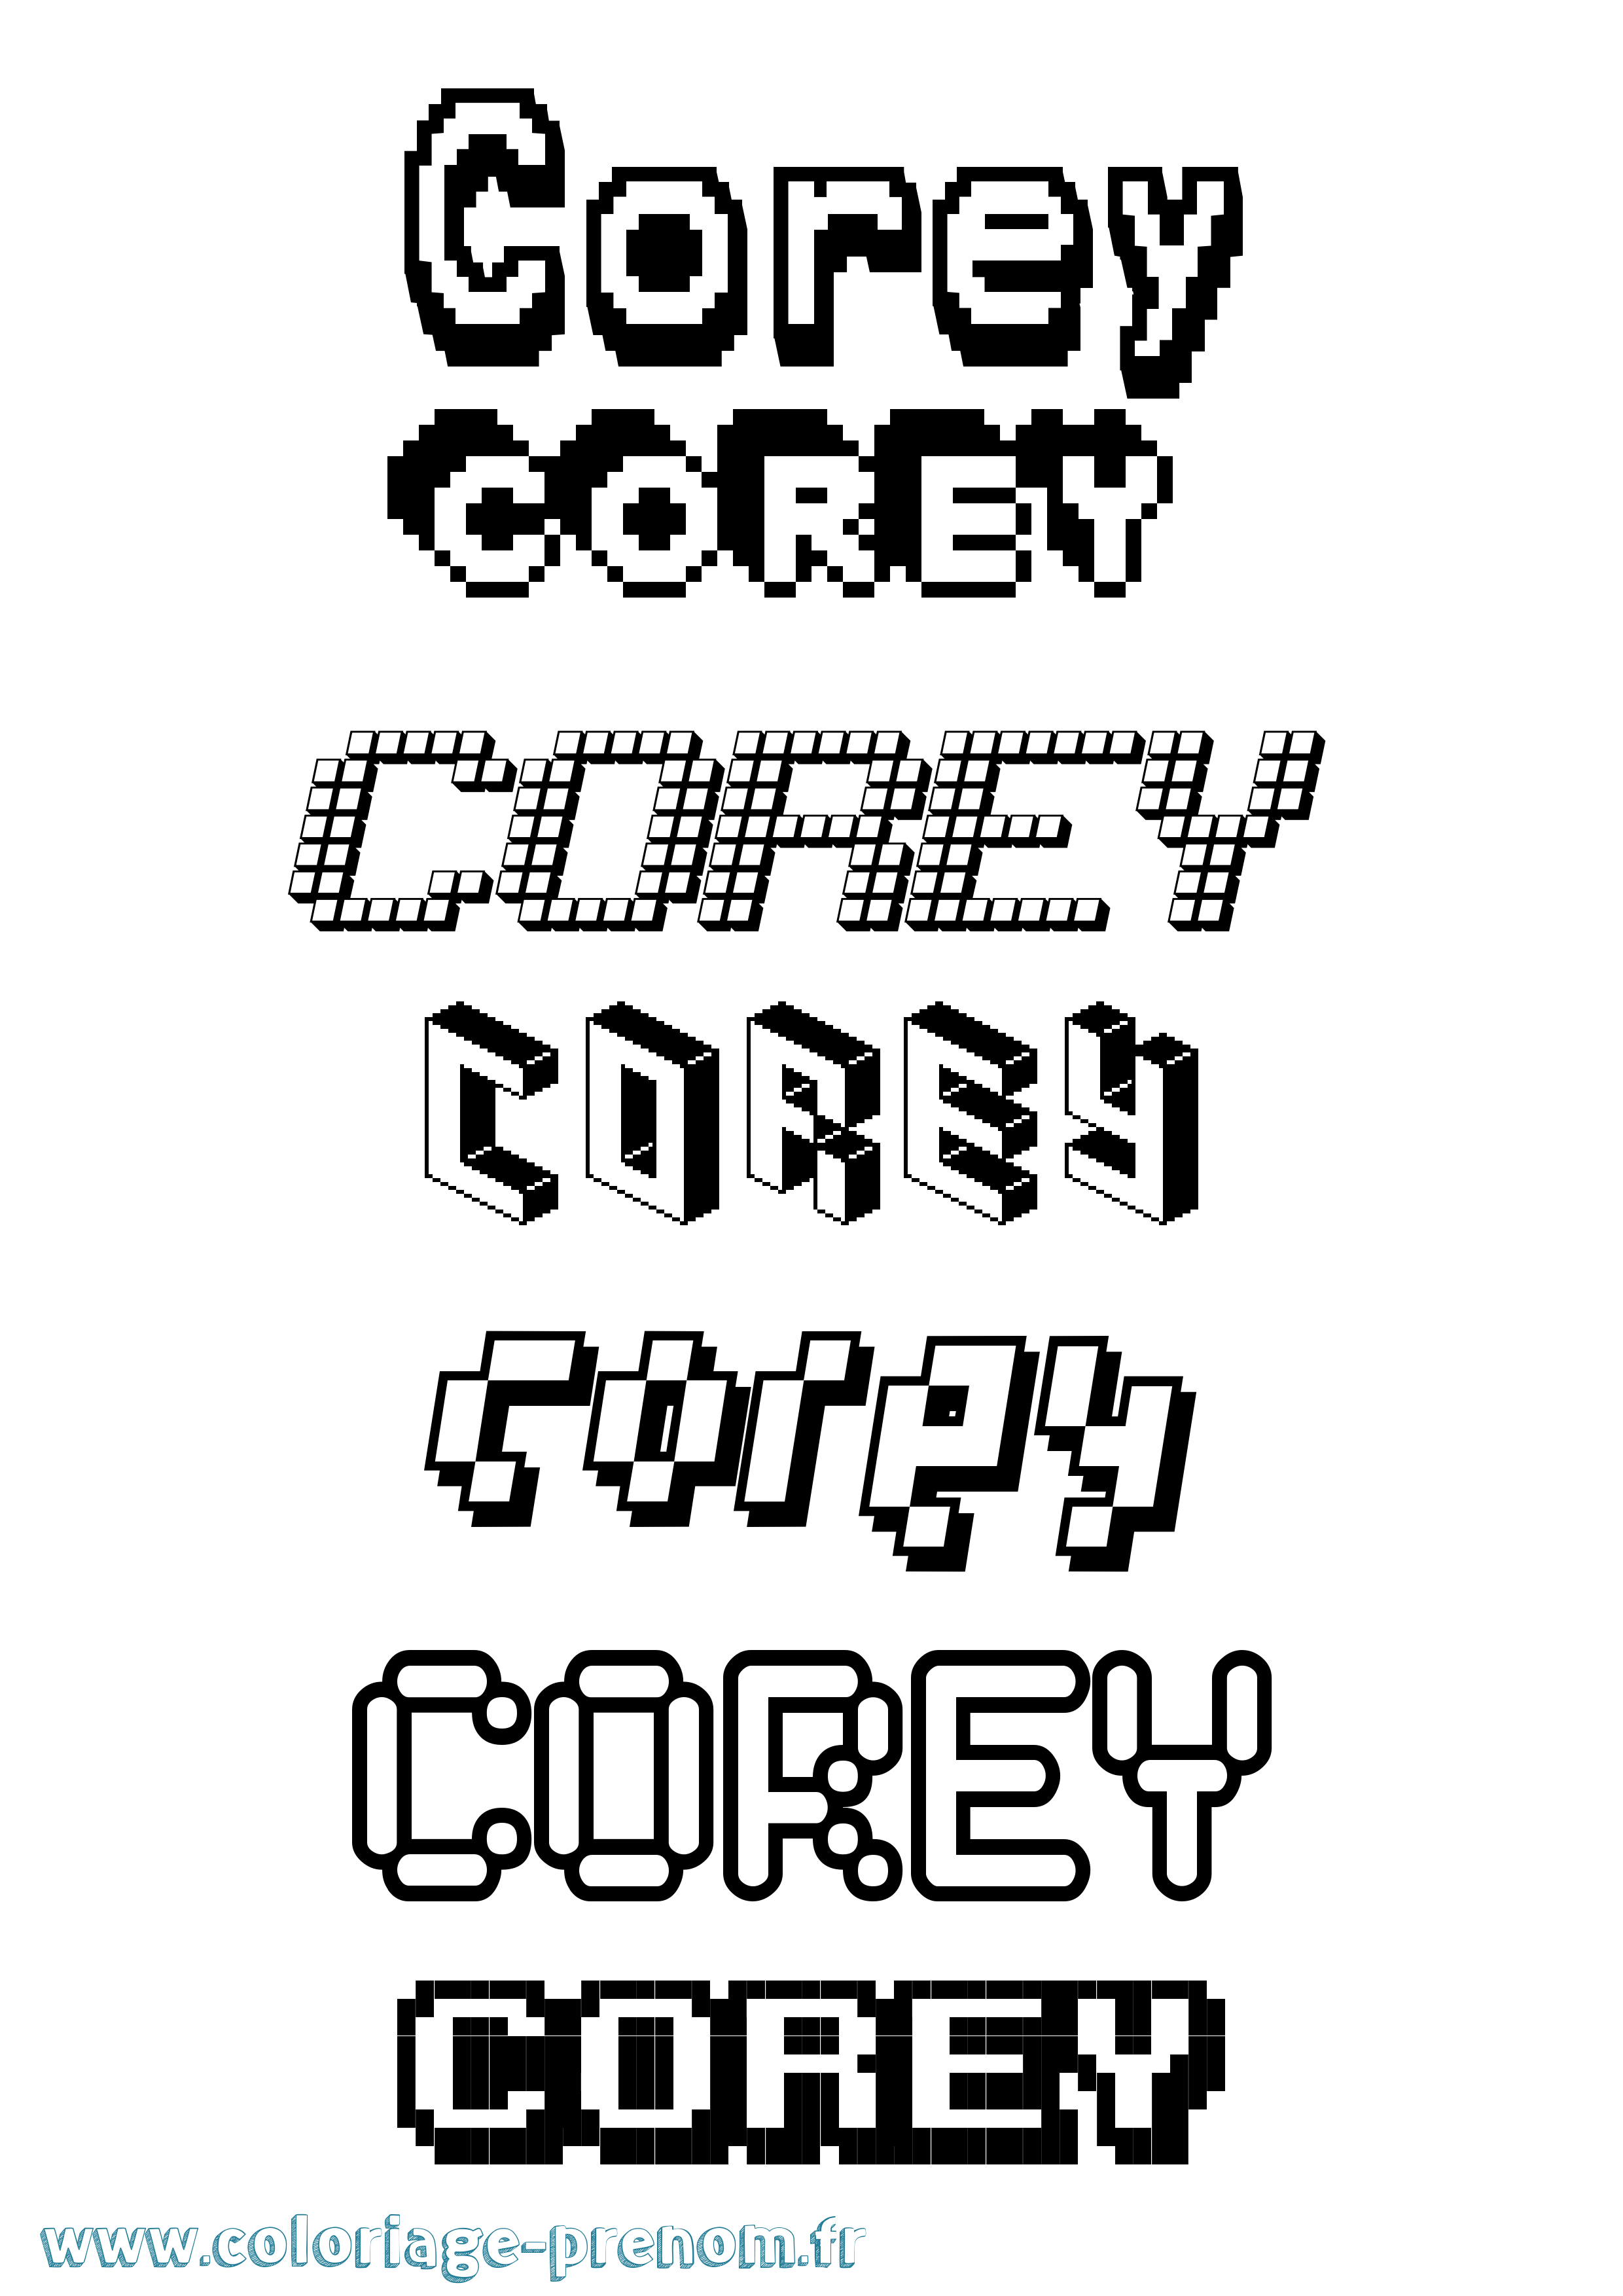 Coloriage prénom Corey Pixel